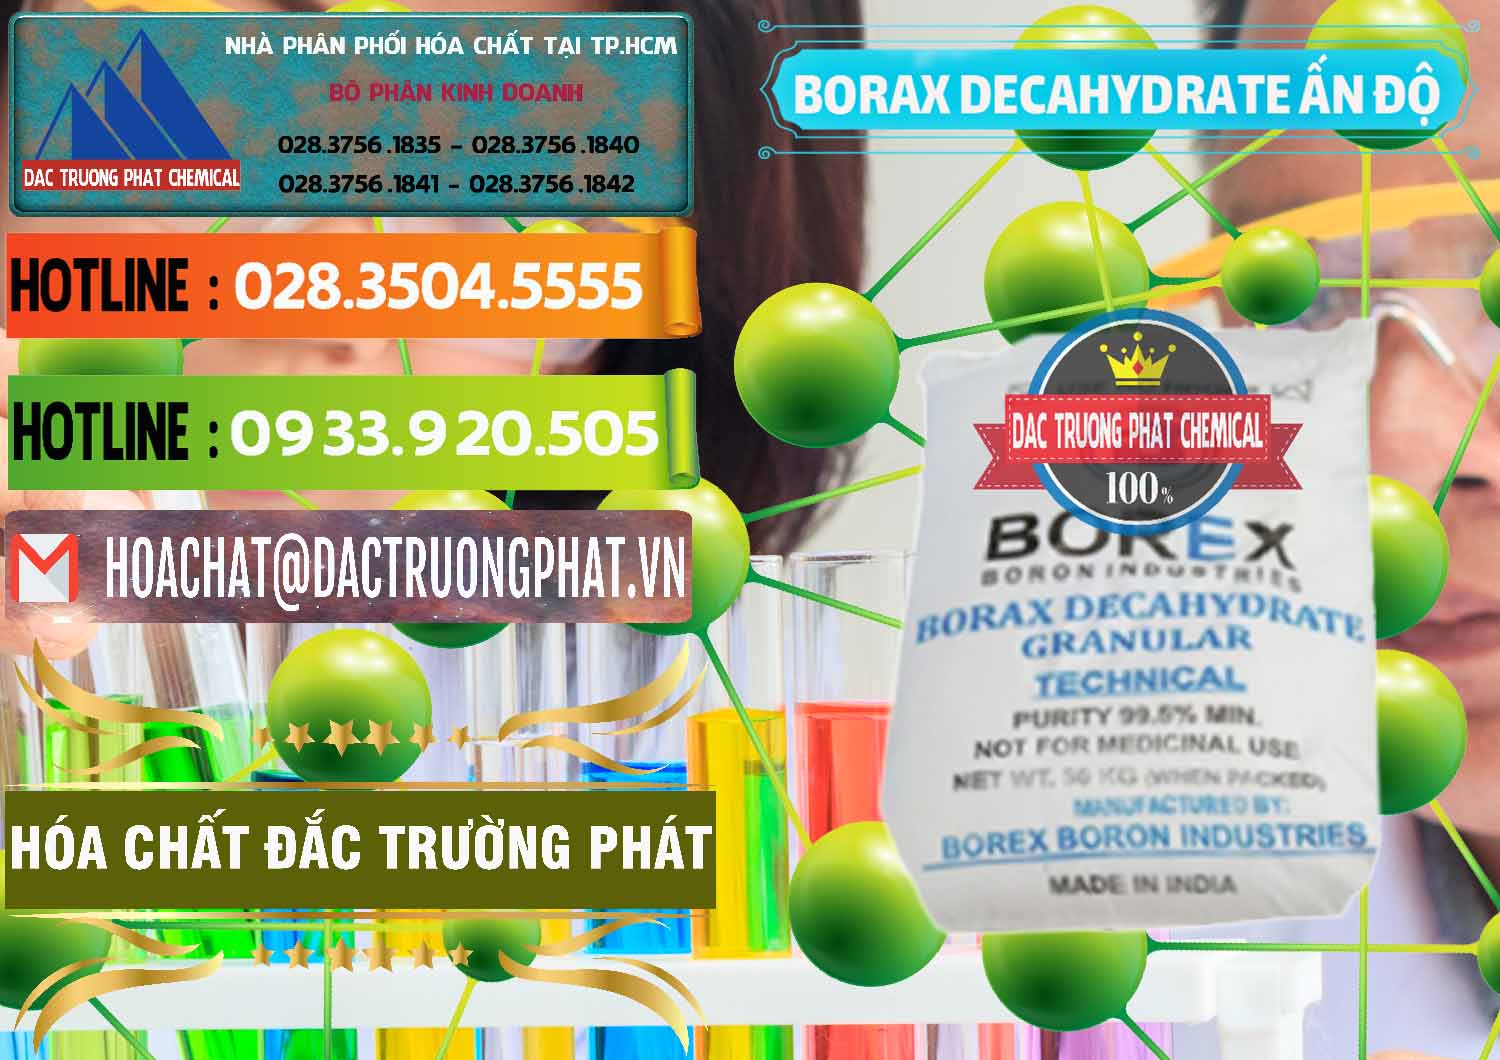 Cty chuyên kinh doanh & bán Borax Decahydrate Ấn Độ India - 0449 - Đơn vị phân phối ( bán ) hóa chất tại TP.HCM - cungcaphoachat.com.vn